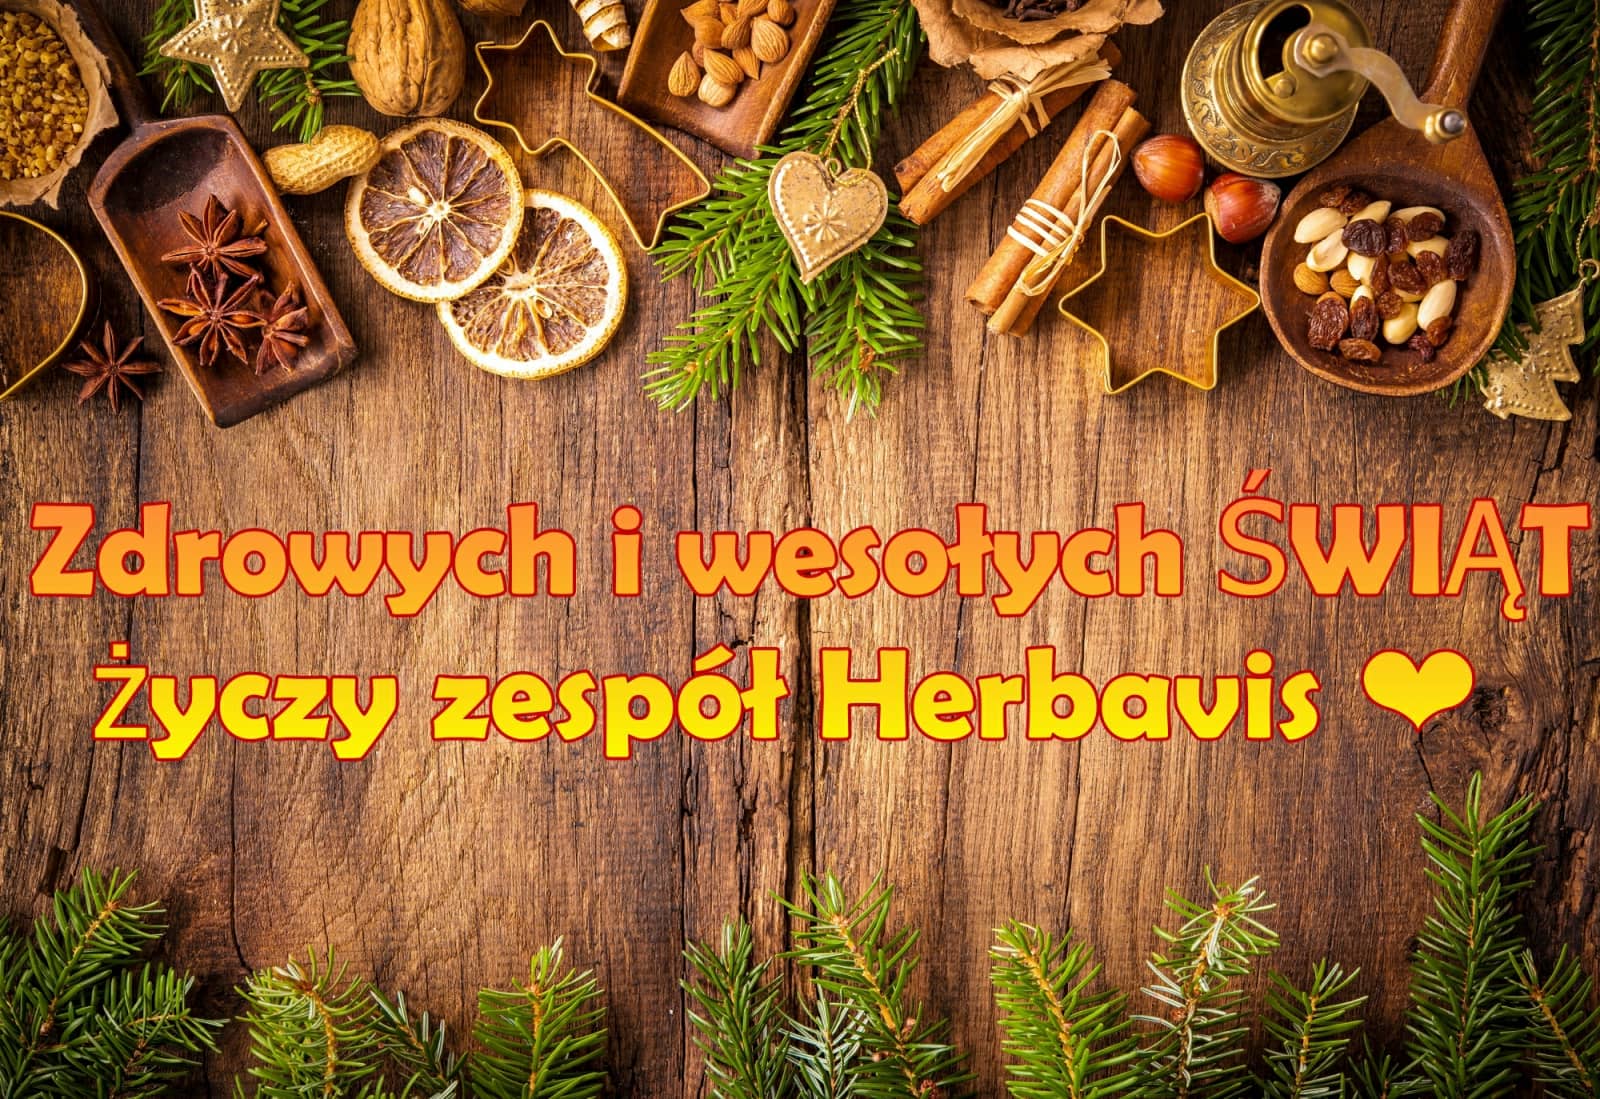 Zdrowych i wesołych Świąt życzy zespół Herbavis :)